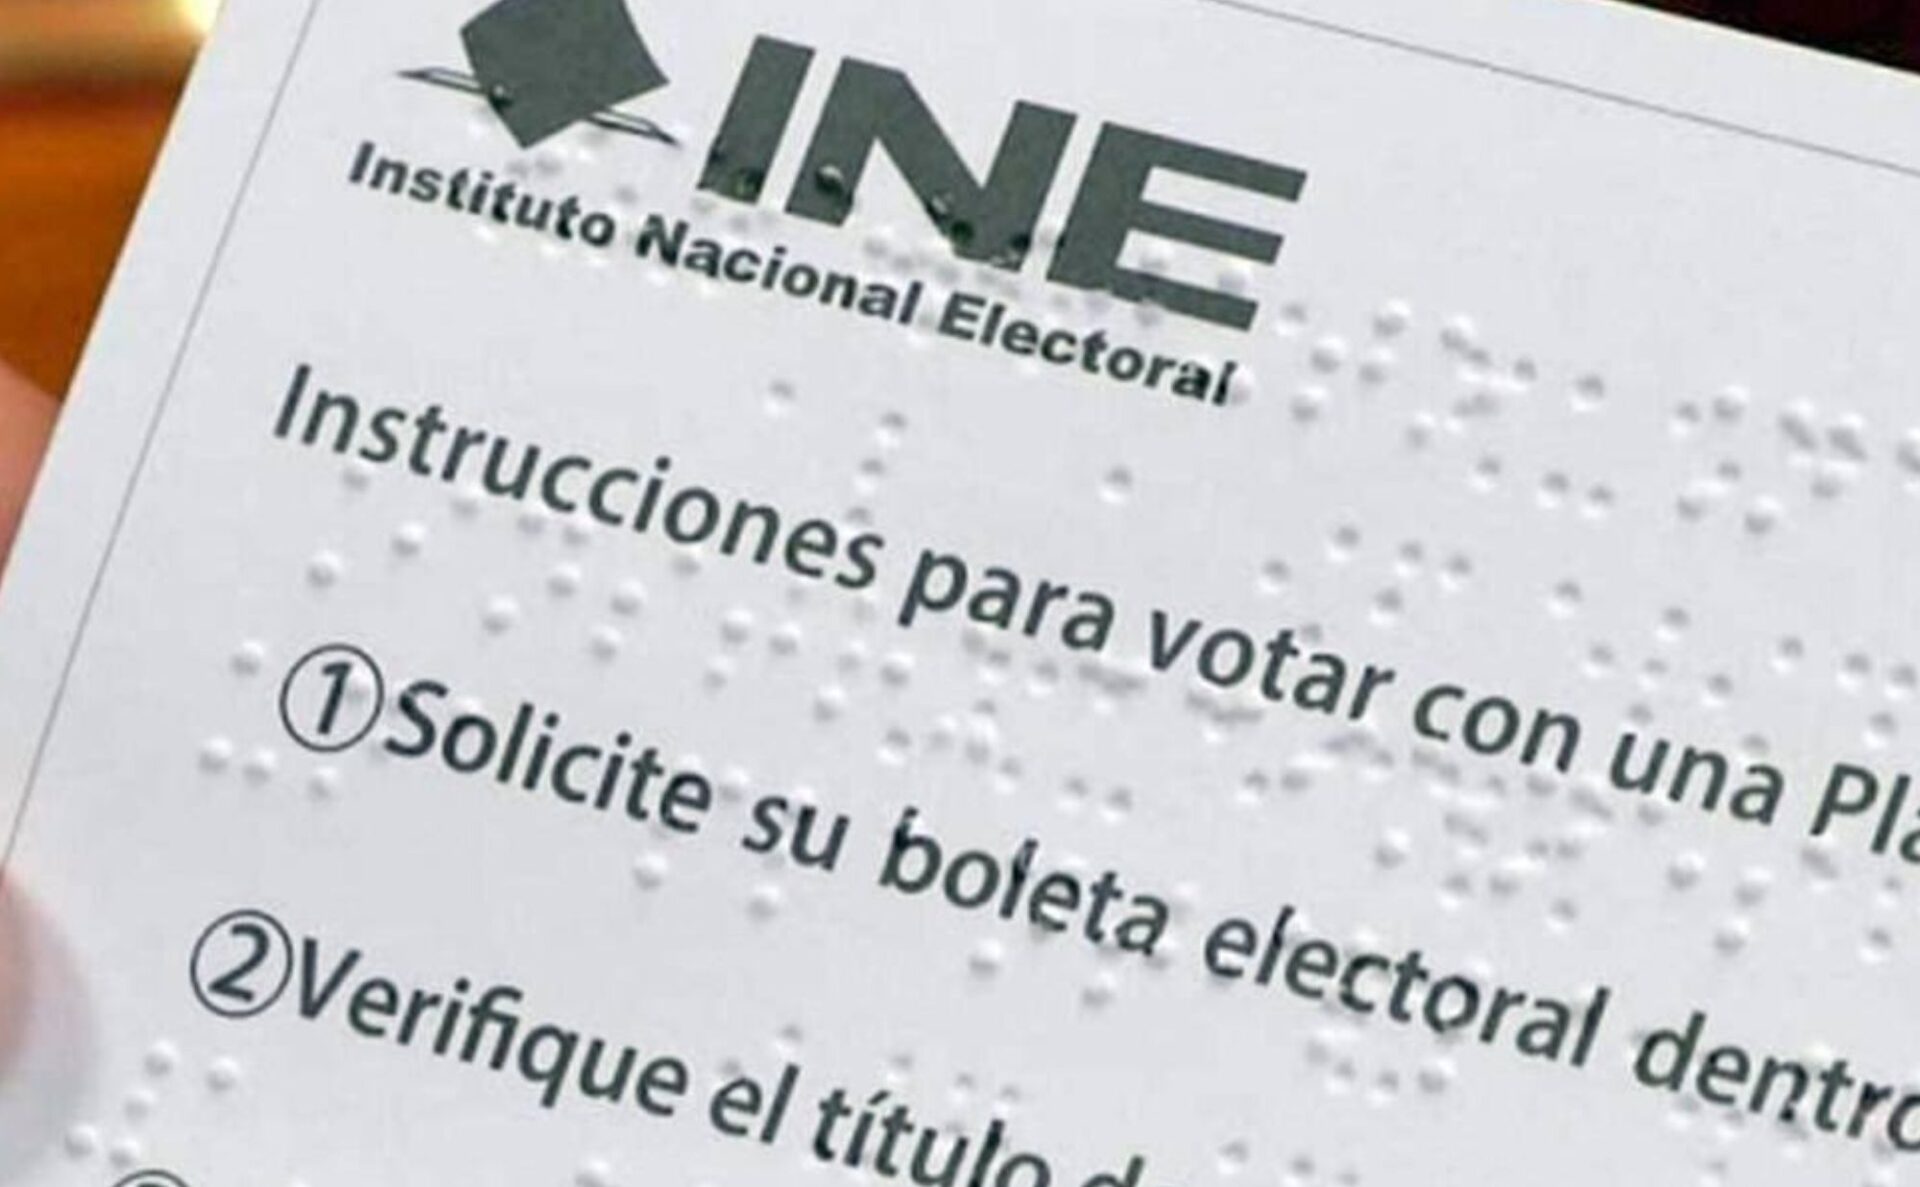 Así son las urnas y plantillas Braille para boletas electorales que instará el INE en las elecciones